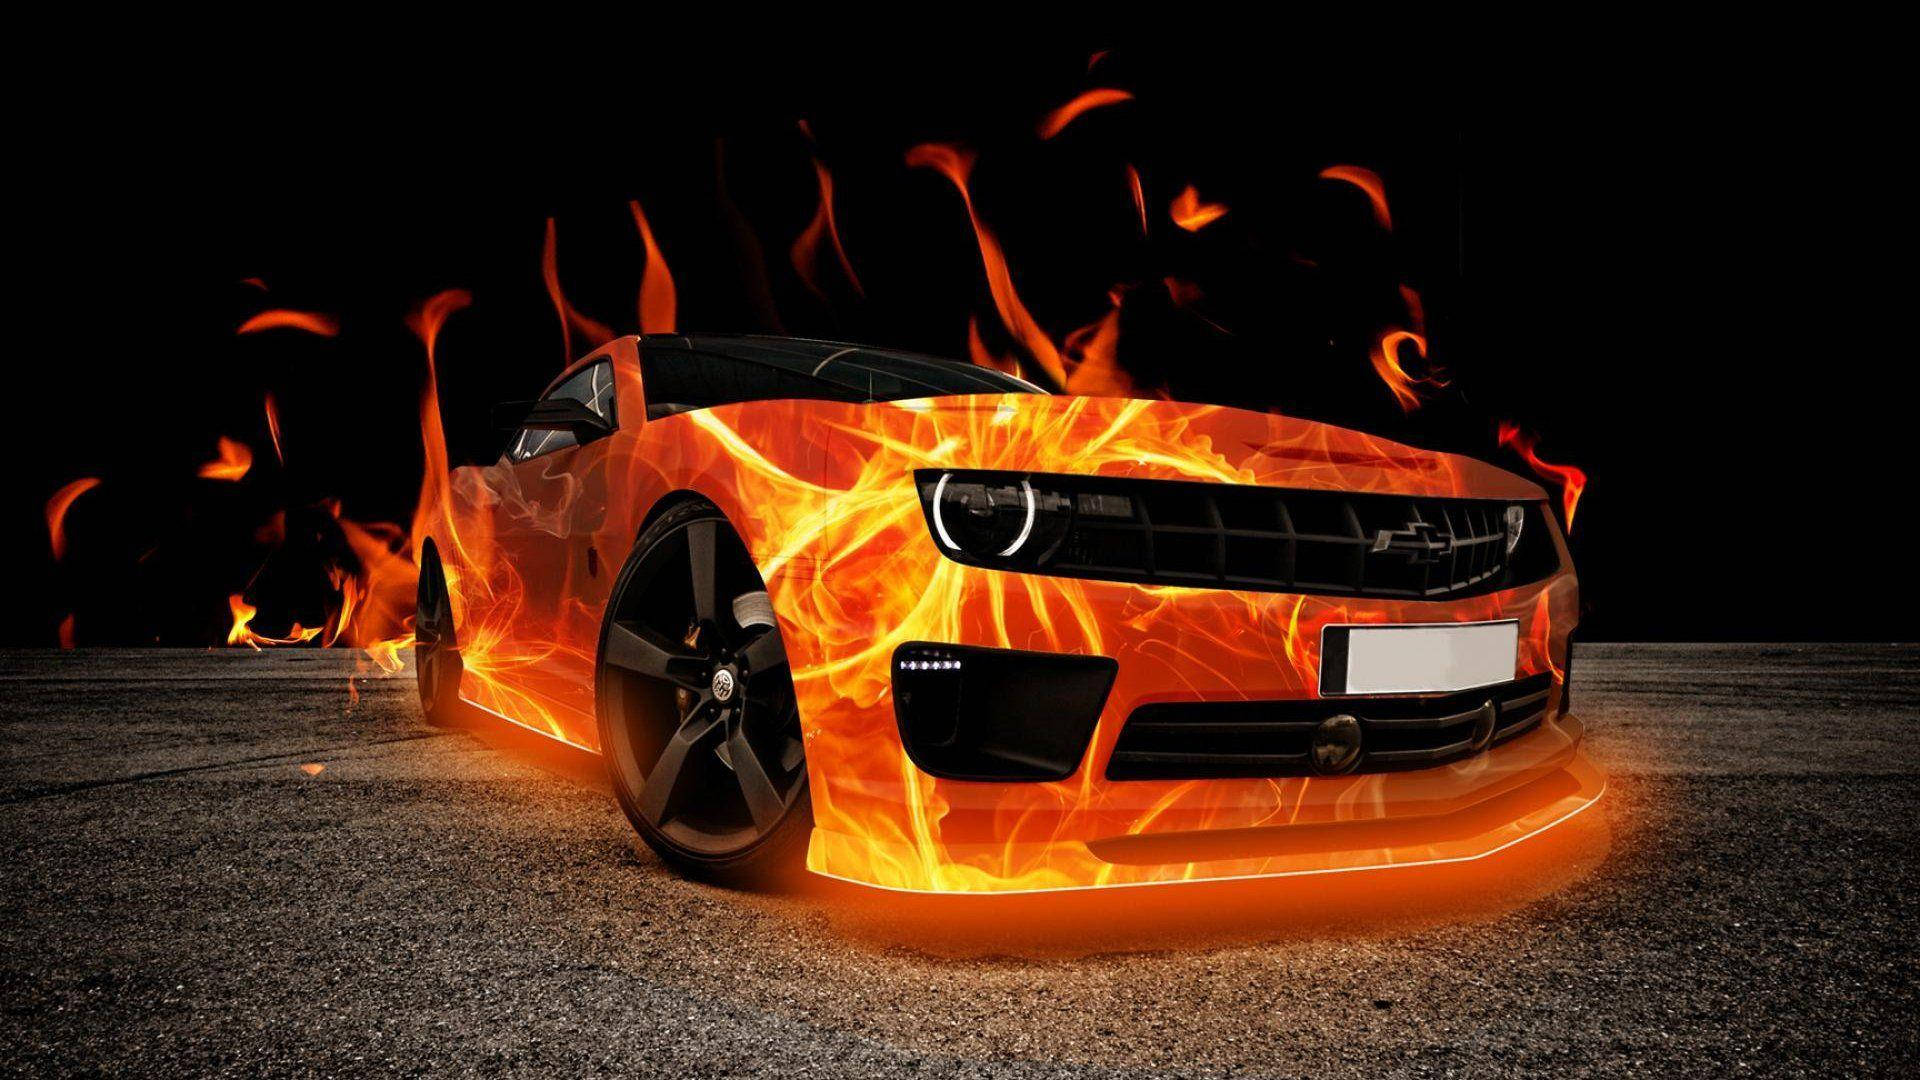 Fiery Beast - A Cool 3d Car On Fire